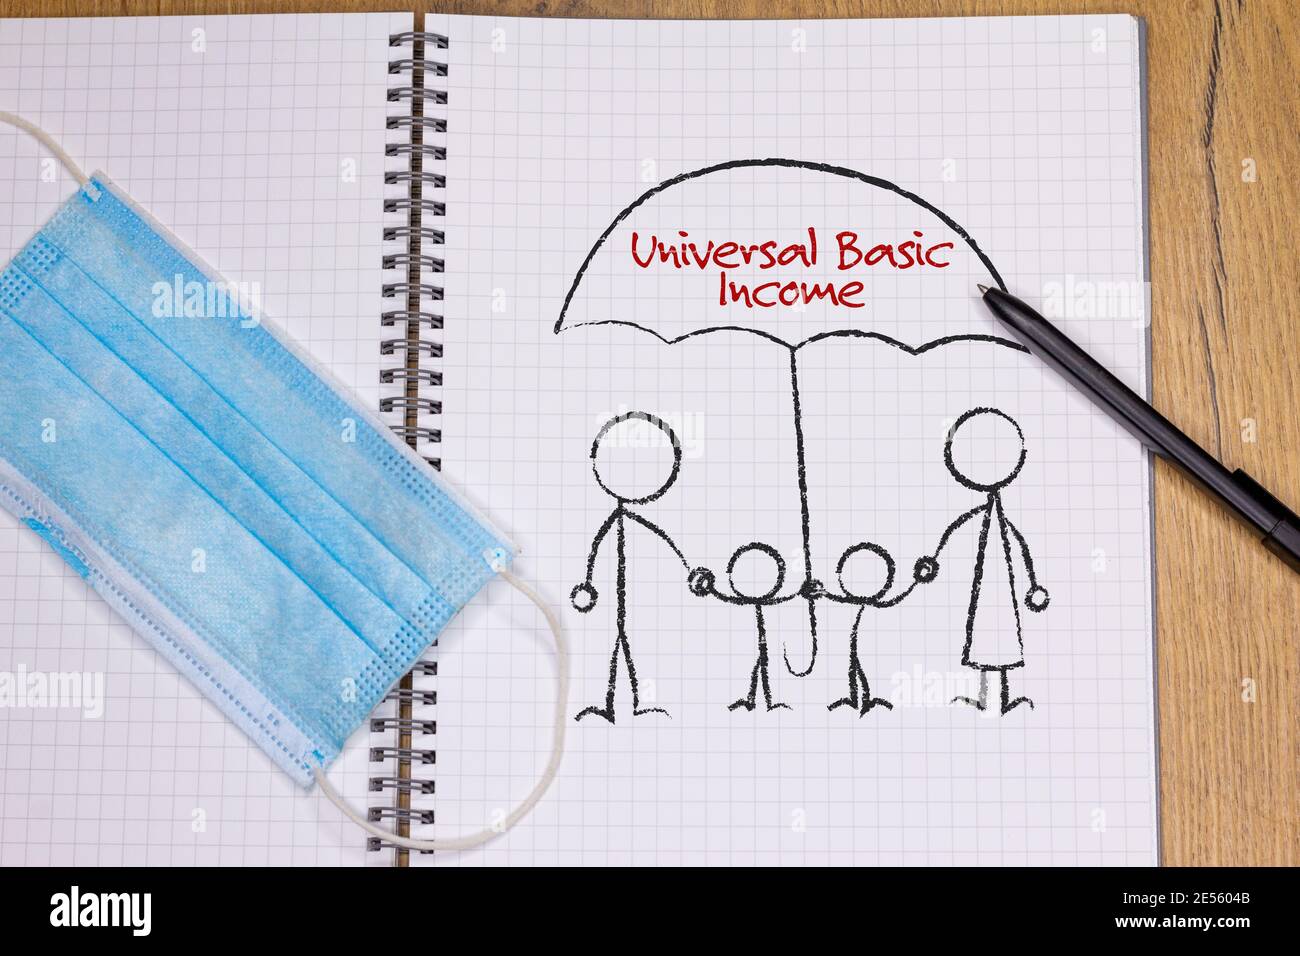 Disegnando sulla nota di famiglia sotto l'ombrello protettivo del reddito di base universale, accanto alla maschera facciale, covid post pandemico 19 reddito incondizionato Foto Stock